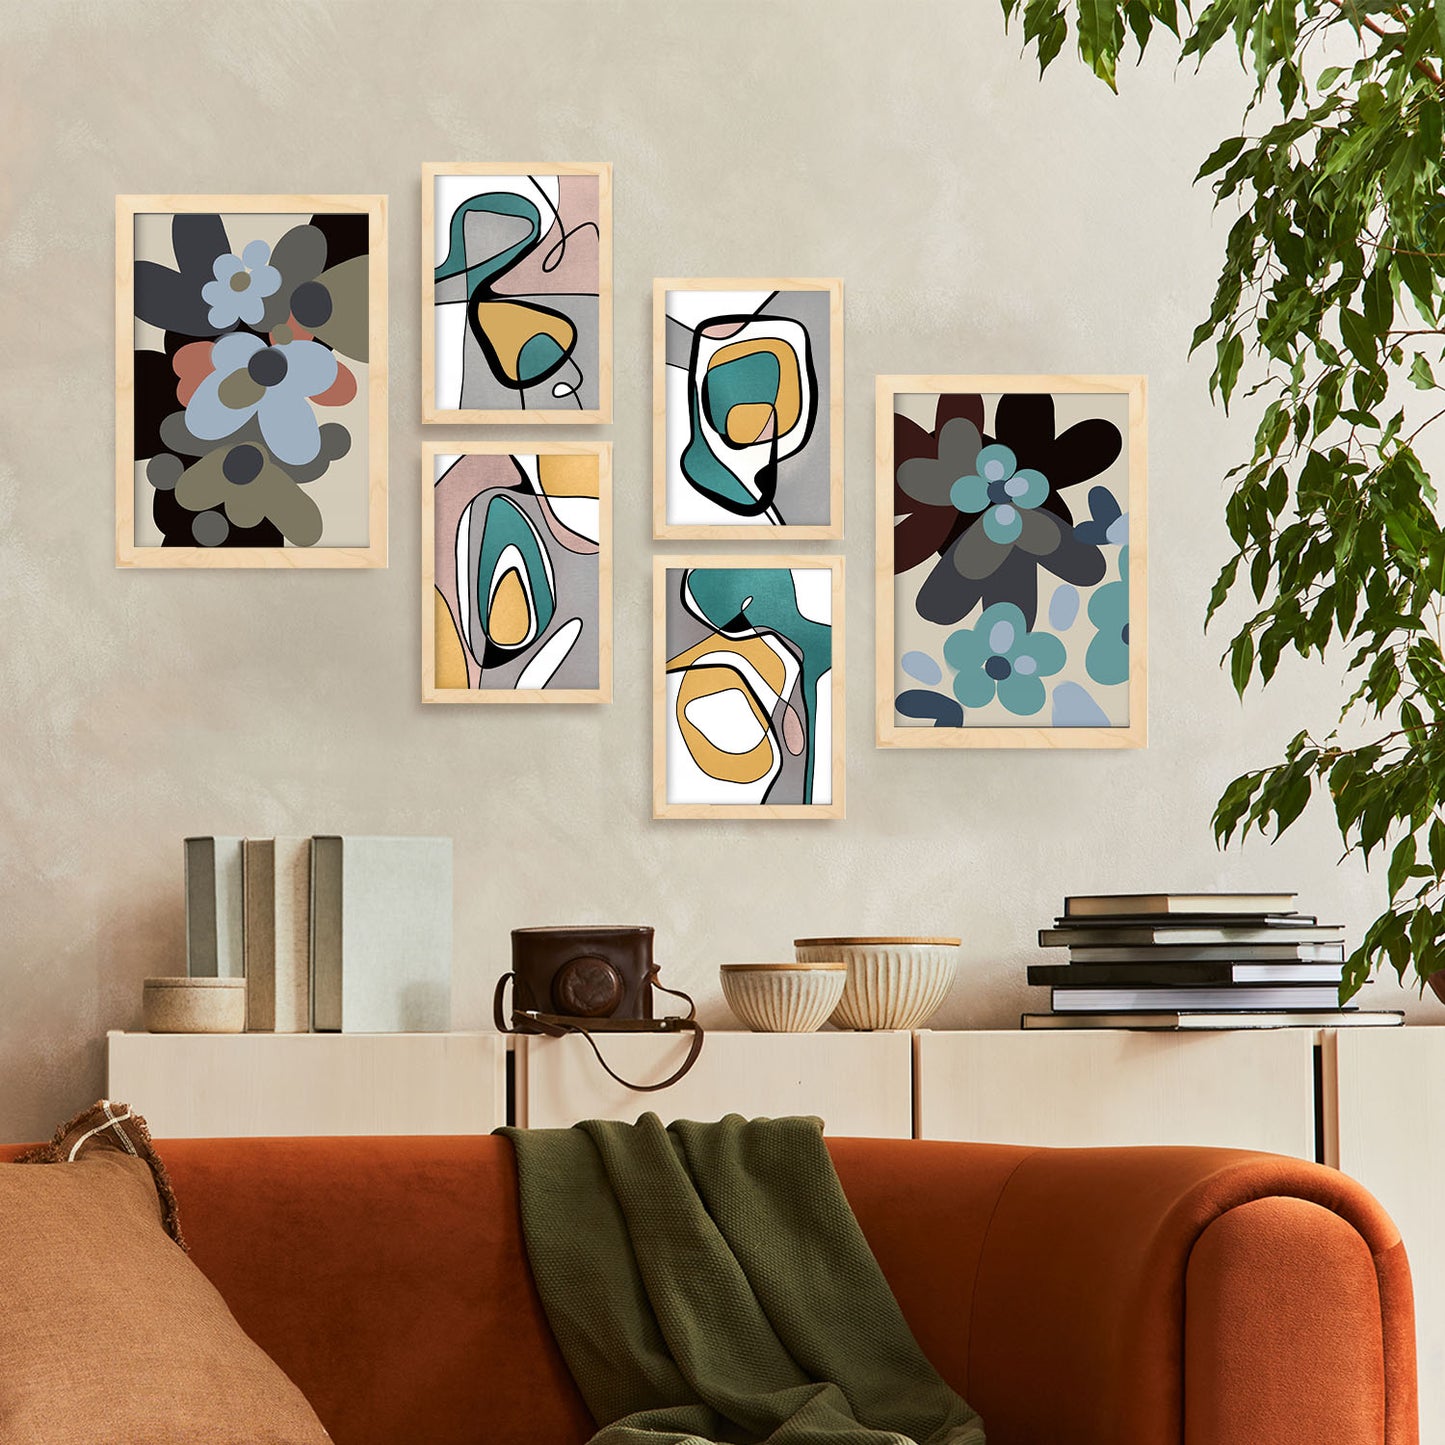 Nacnic Set de 6 Flor de hodgepodge Posters. En Abstracto de las flores. Estampados decorativos estéticos para su sala de estar, dormitorio, hogar Tamaños A4 y A3